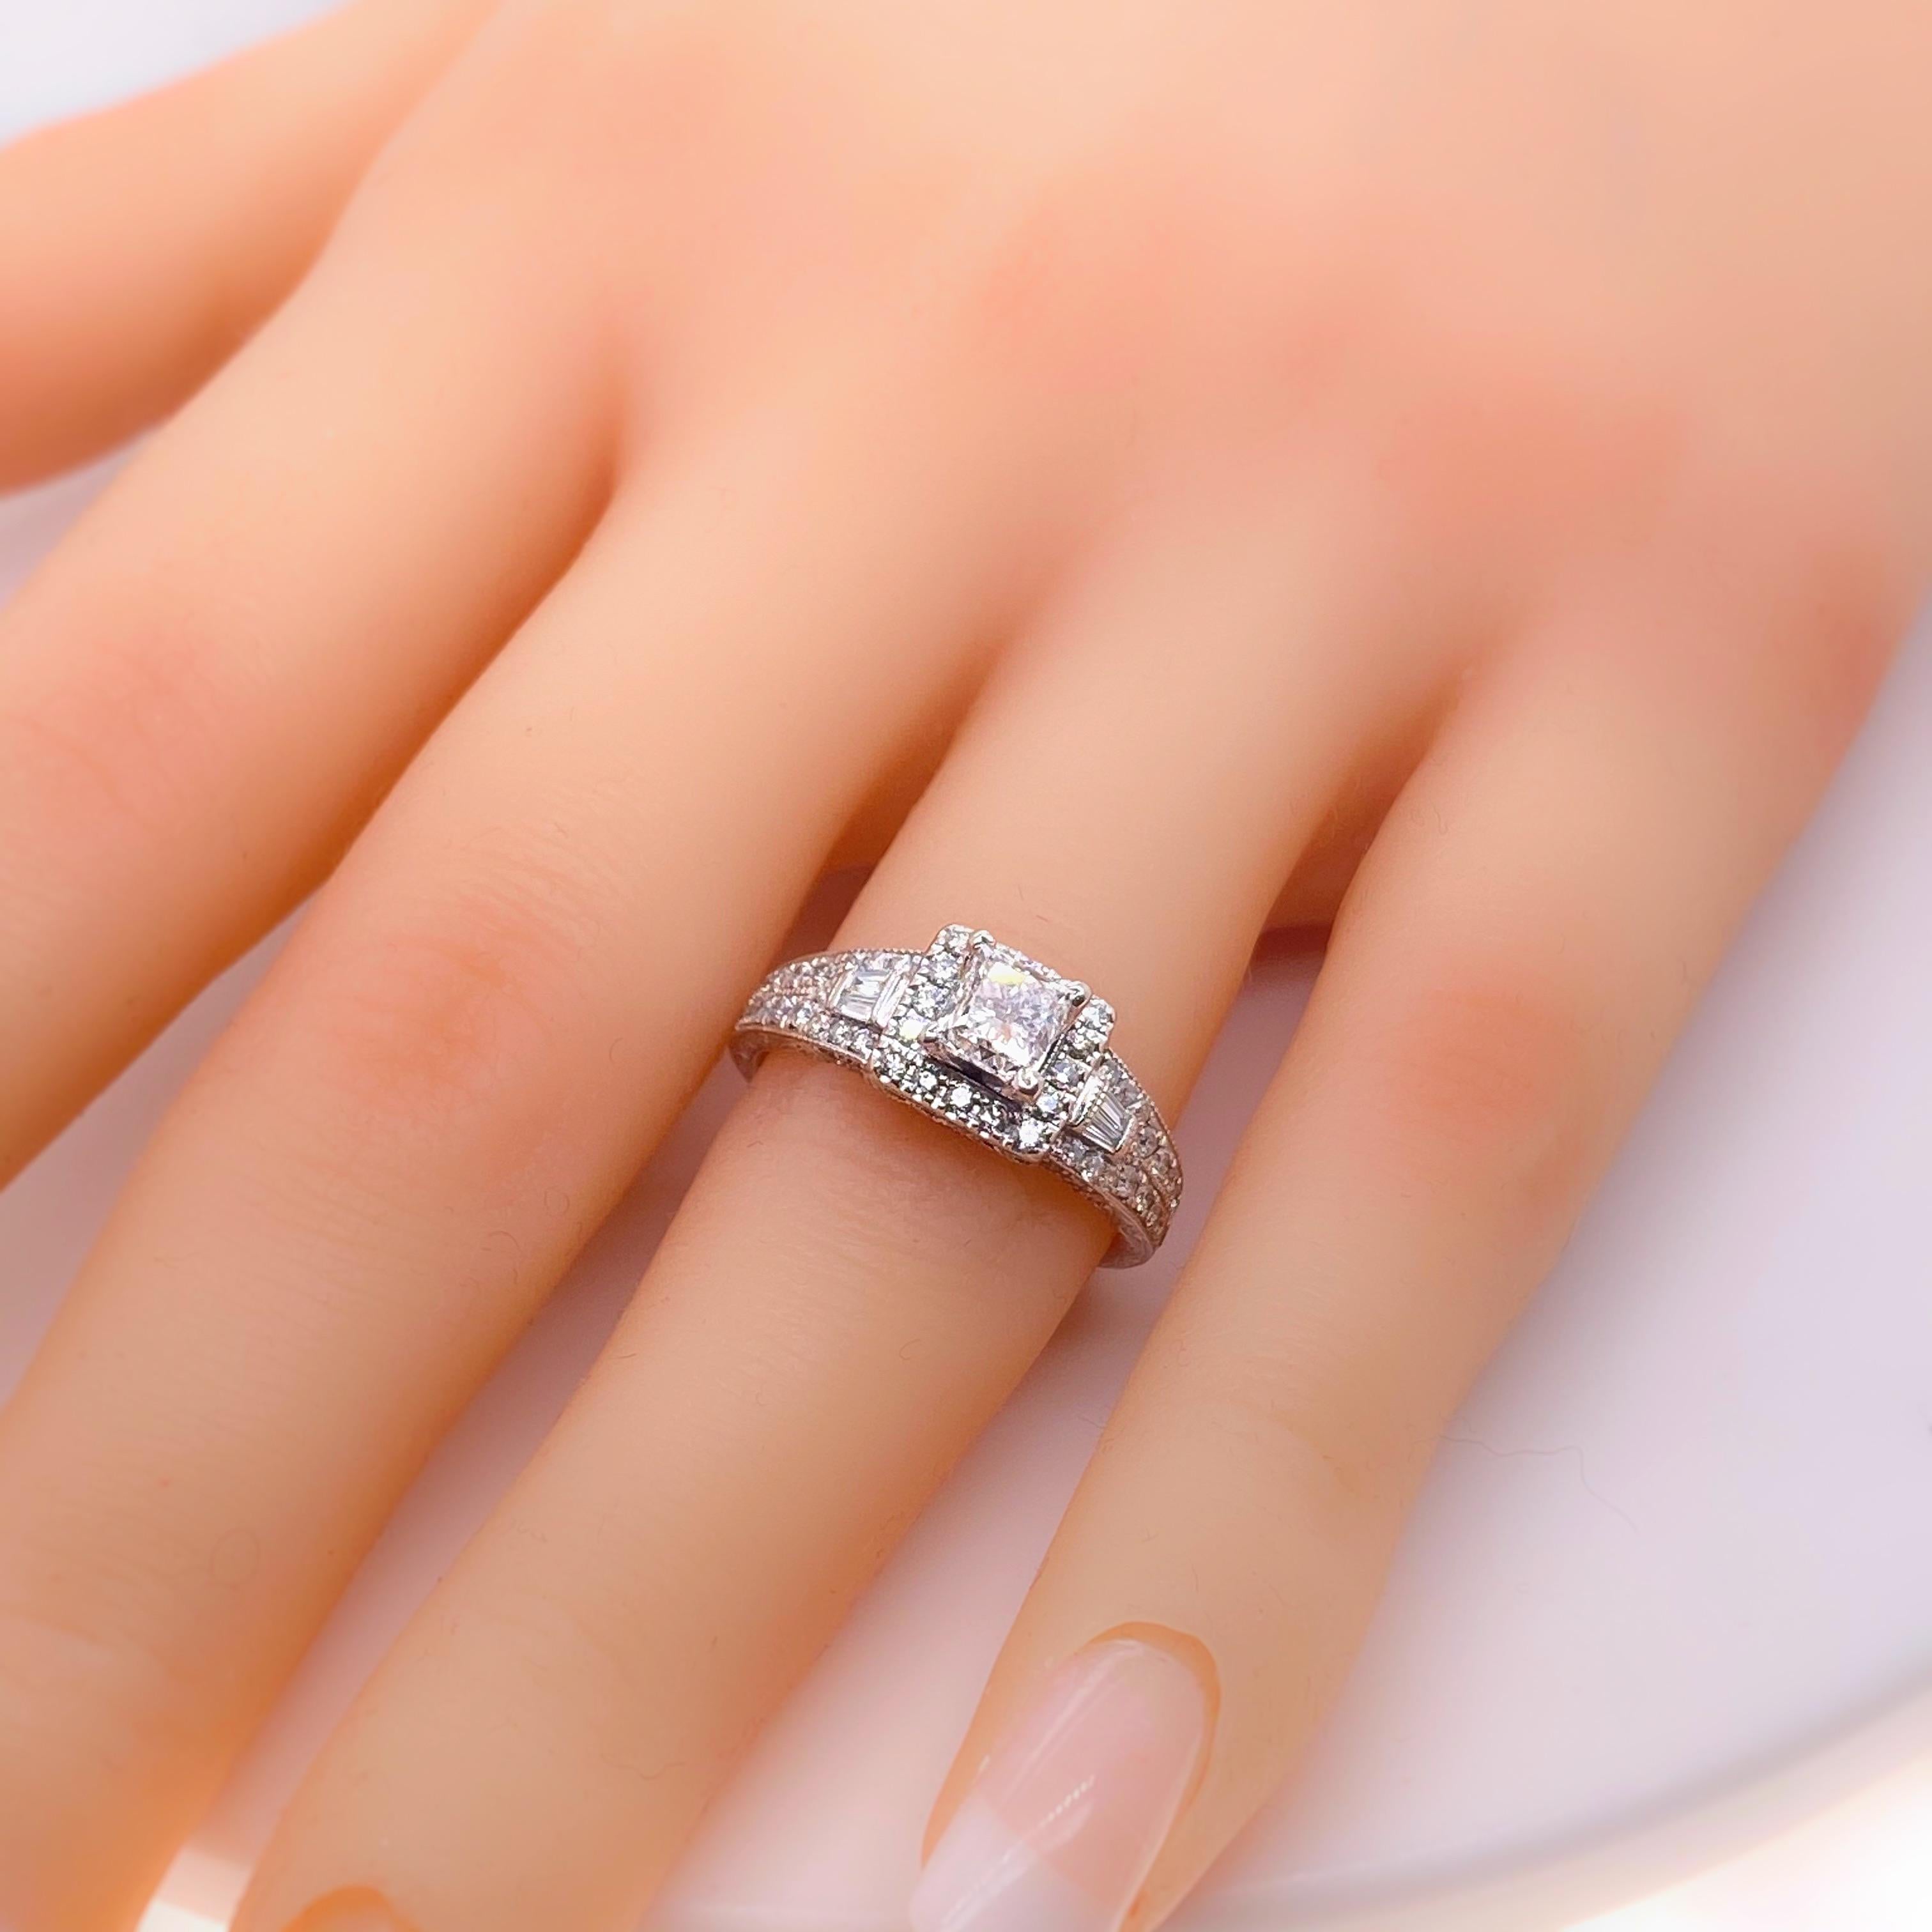 Neil Lane Princess Diamond 1.50 Carat Engagement Ring in 14 Karat White Gold For Sale 3